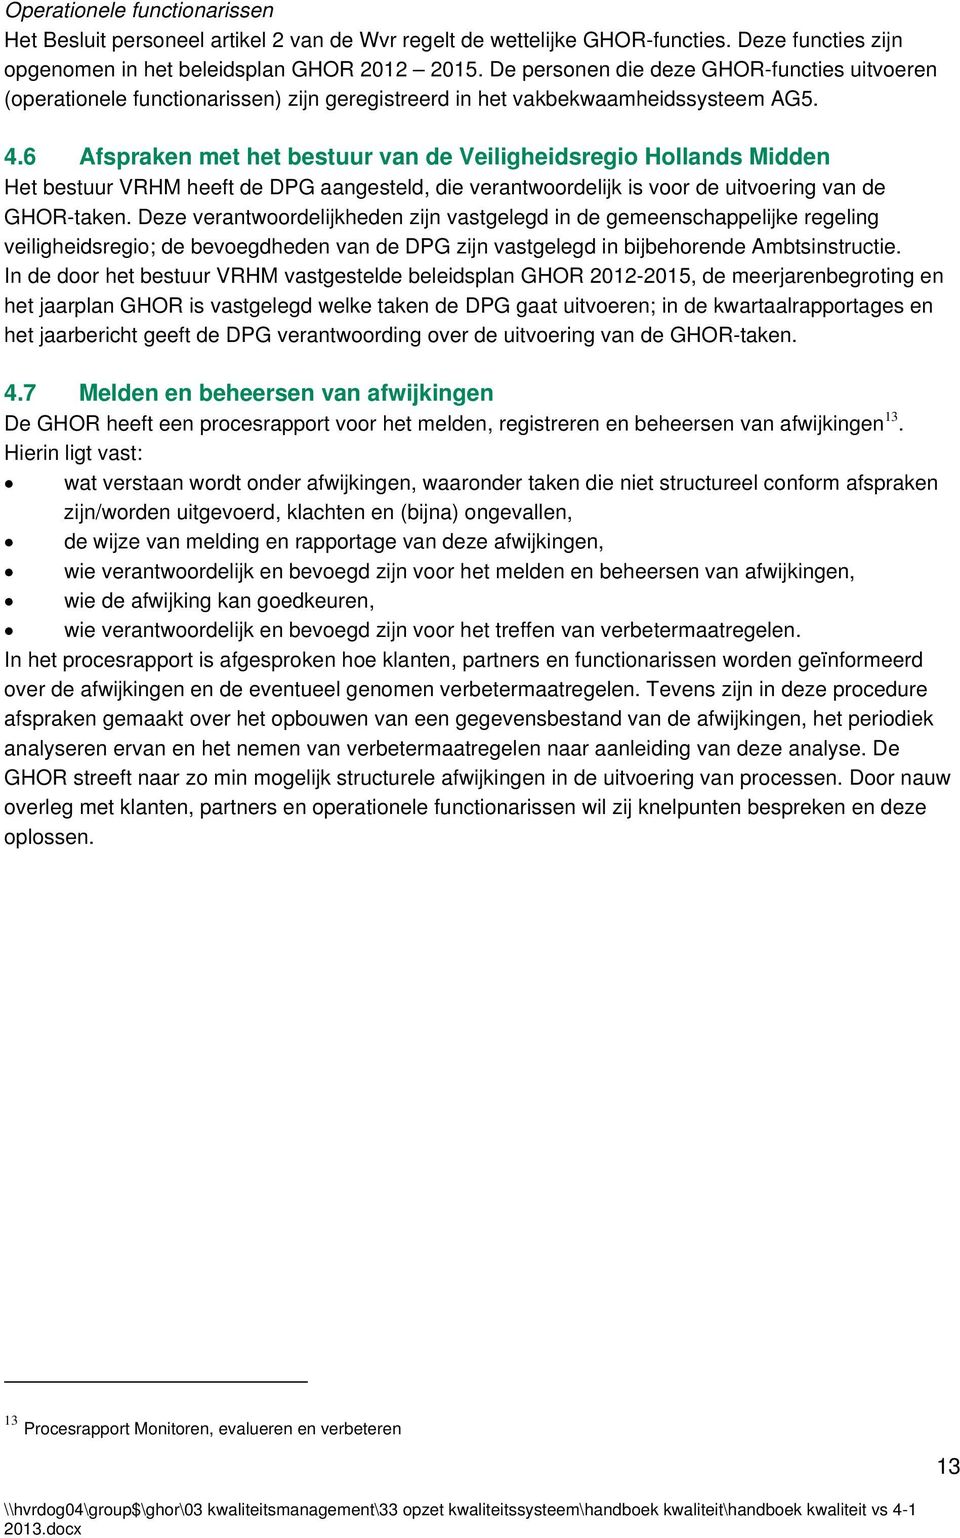 6 Afspraken met het bestuur van de Veiligheidsregio Hollands Midden Het bestuur VRHM heeft de DPG aangesteld, die verantwoordelijk is voor de uitvoering van de GHOR-taken.